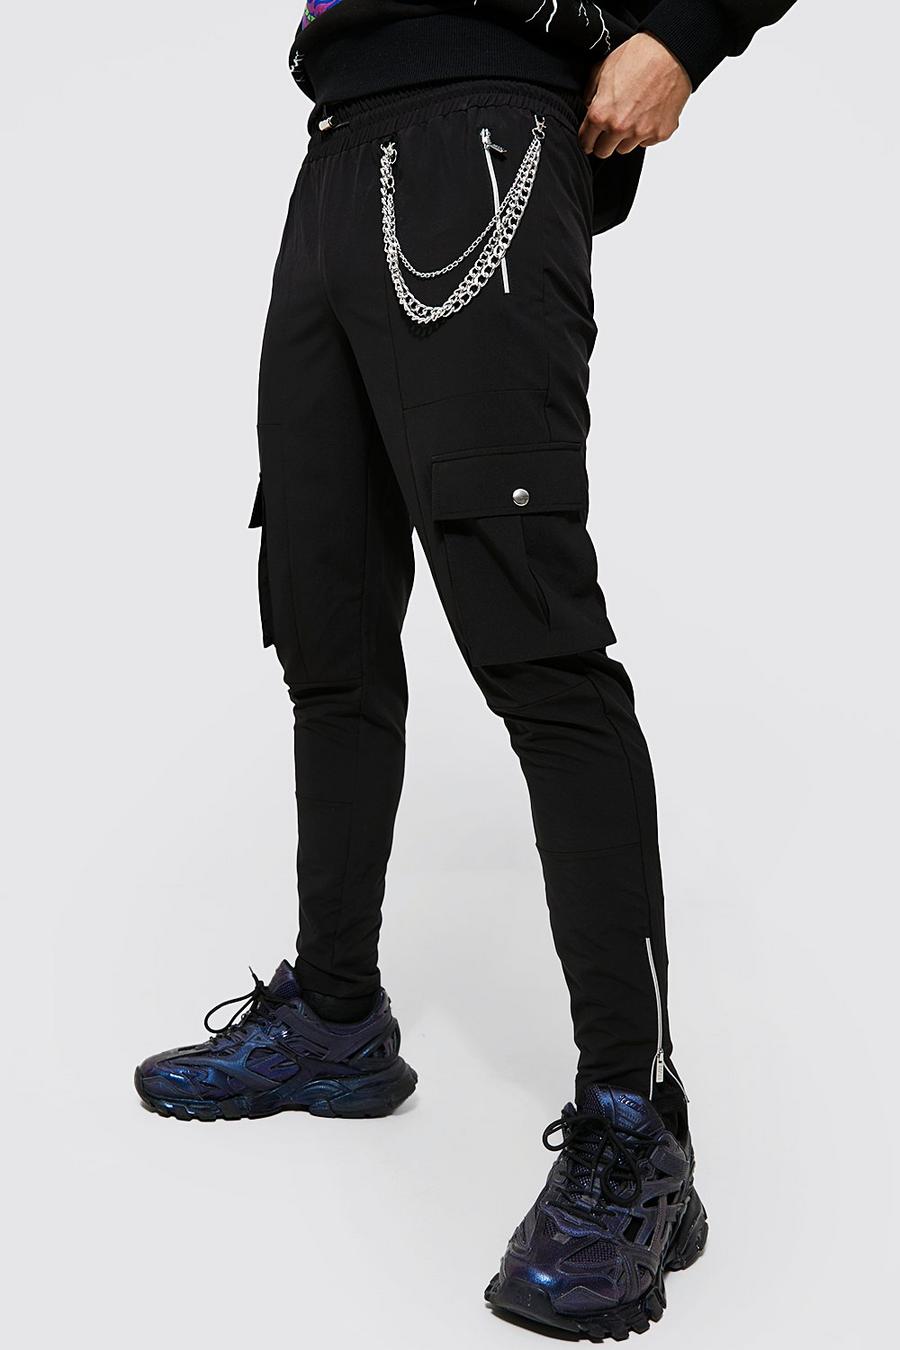 Pantaloni Slim Fit in Stretch con catene e tasche Cargo in rilievo, Black negro